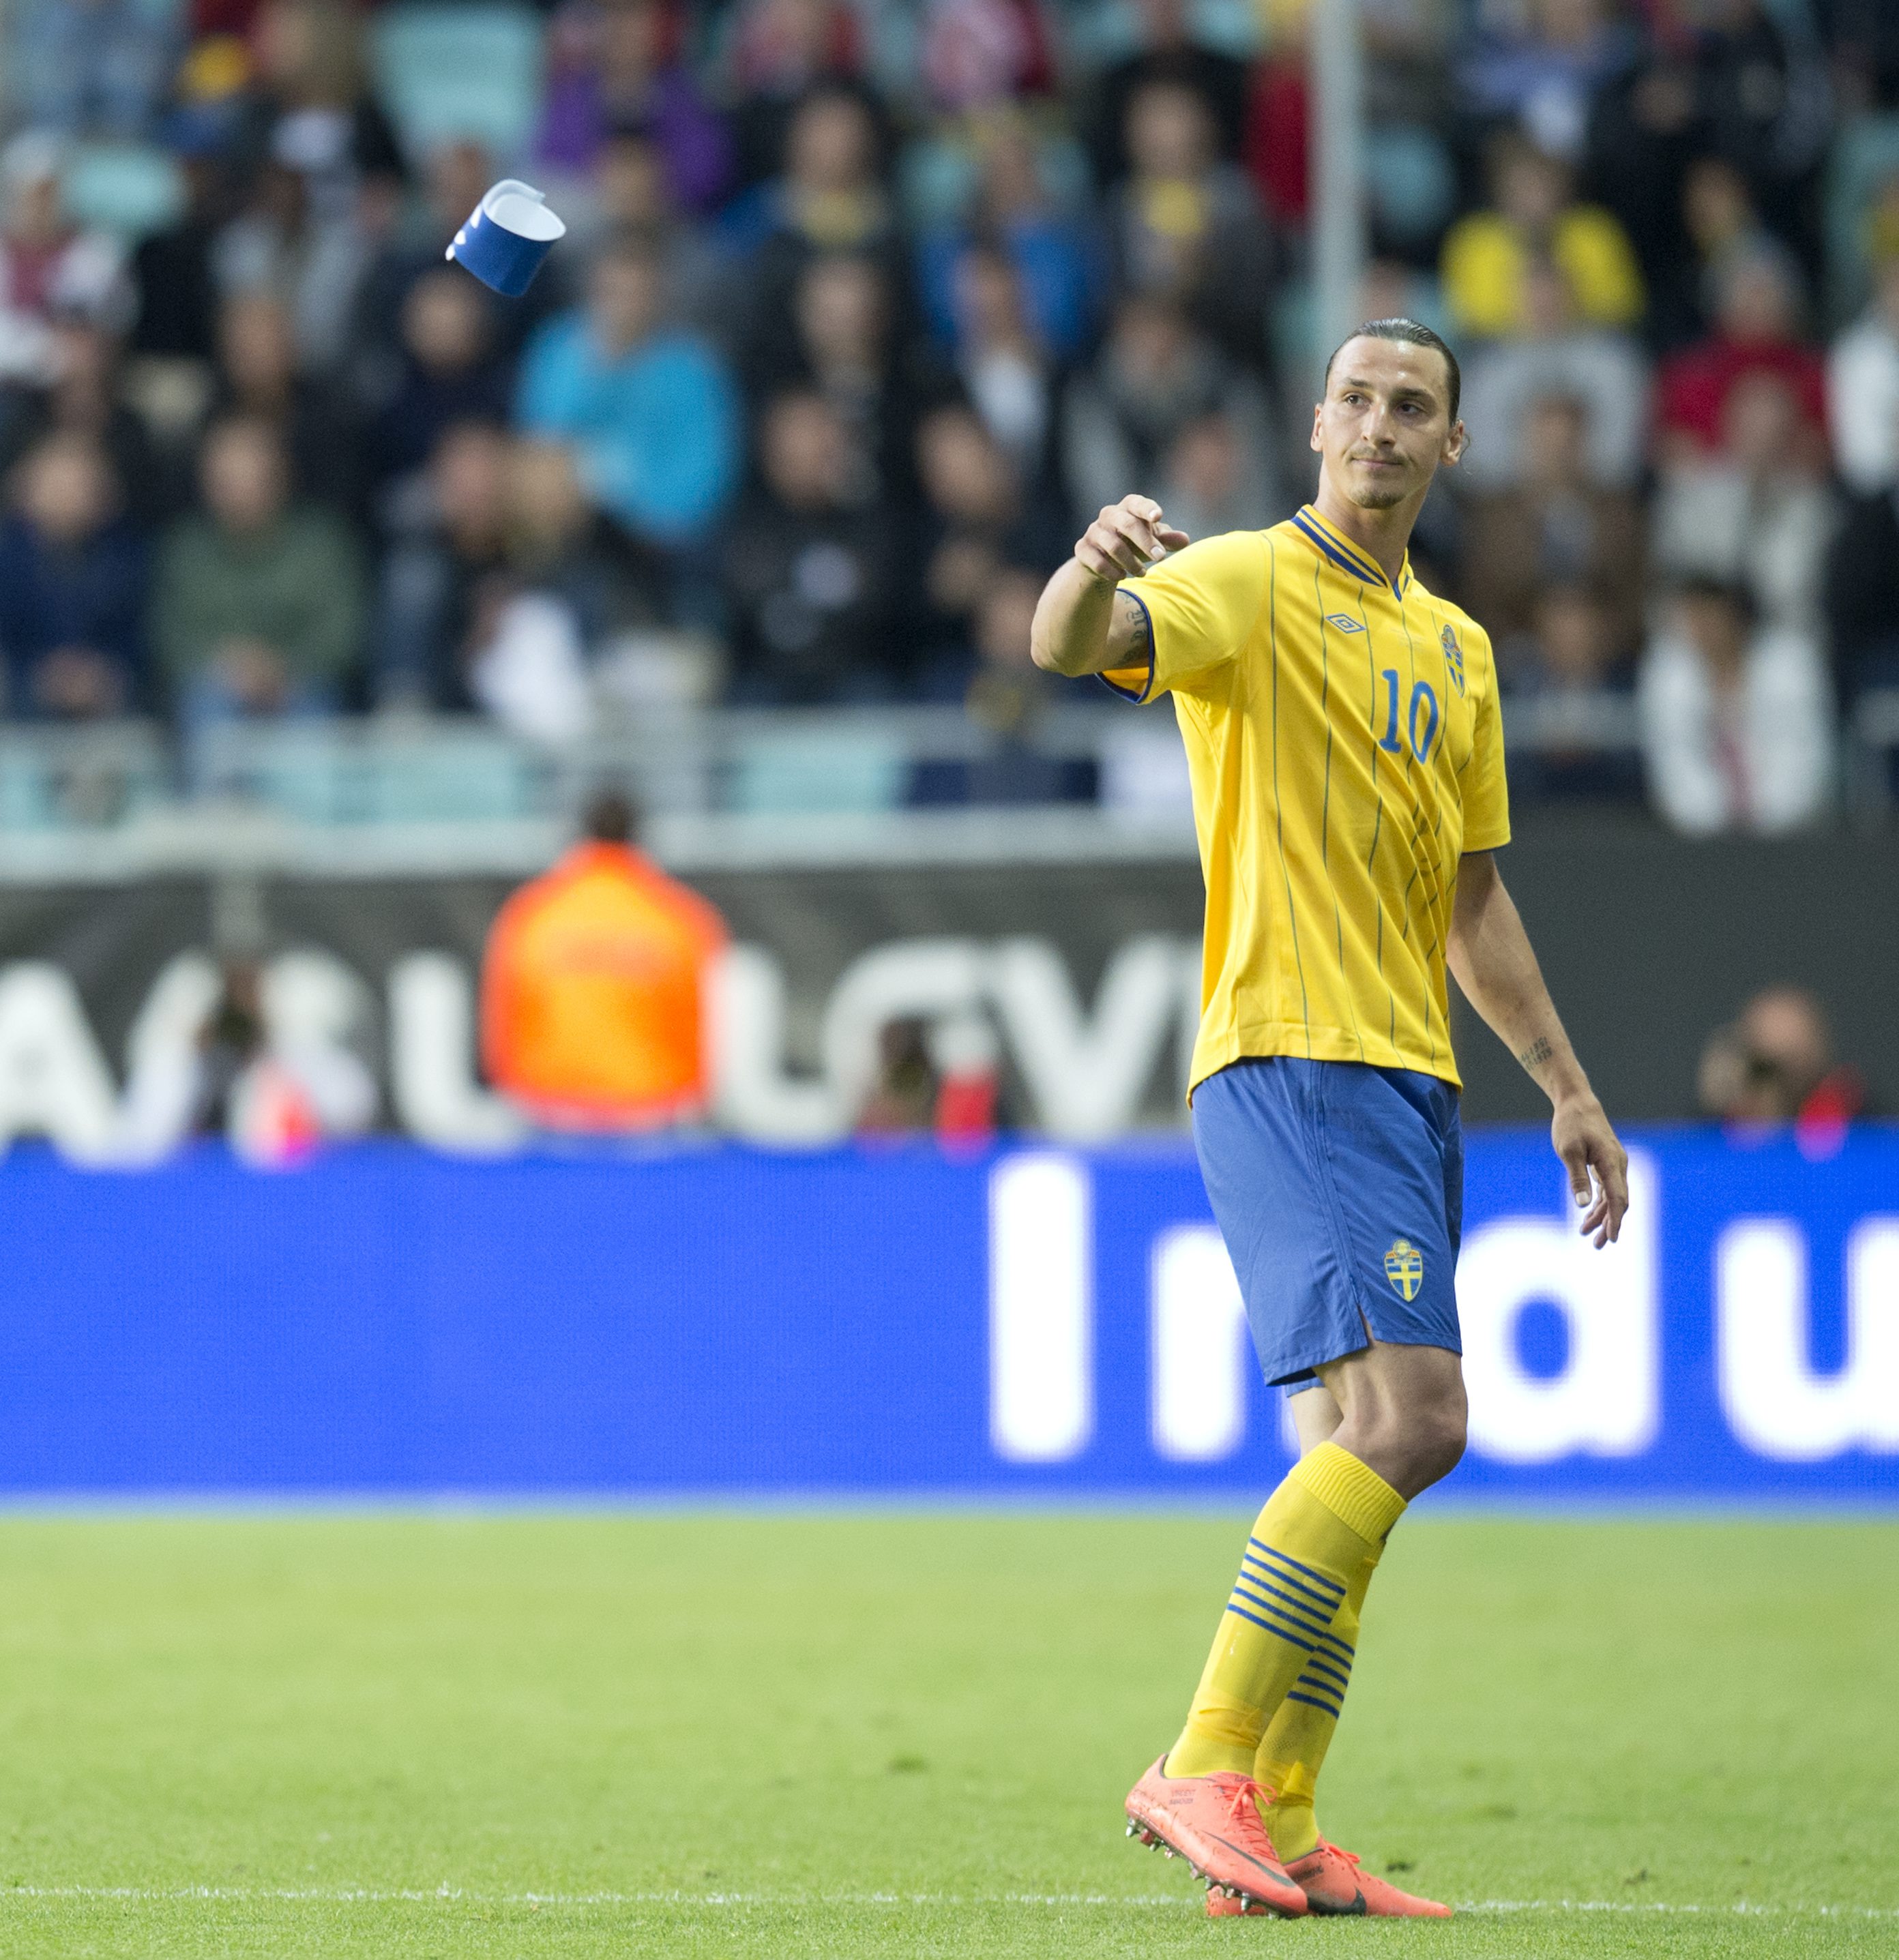 Zlatan Ibrahimovic: 5. Avgjorde matchen på en kvart. Snyggt avslut och världsklass-fint.